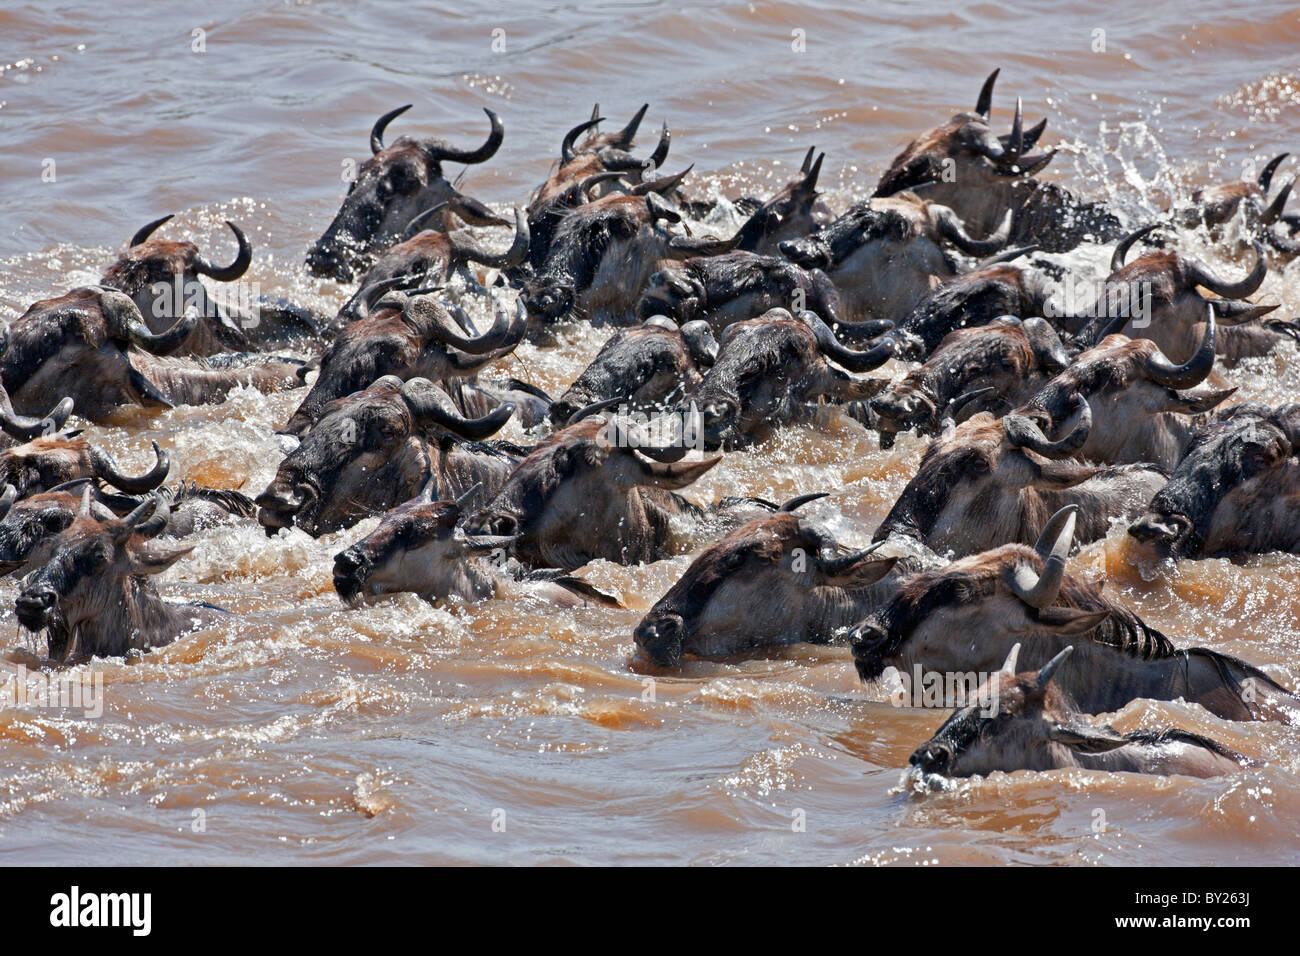 L'ensemble de la natation gnous Mara River pendant leur migration annuelle du Parc National de Serengeti en Tanzanie du Nord Banque D'Images